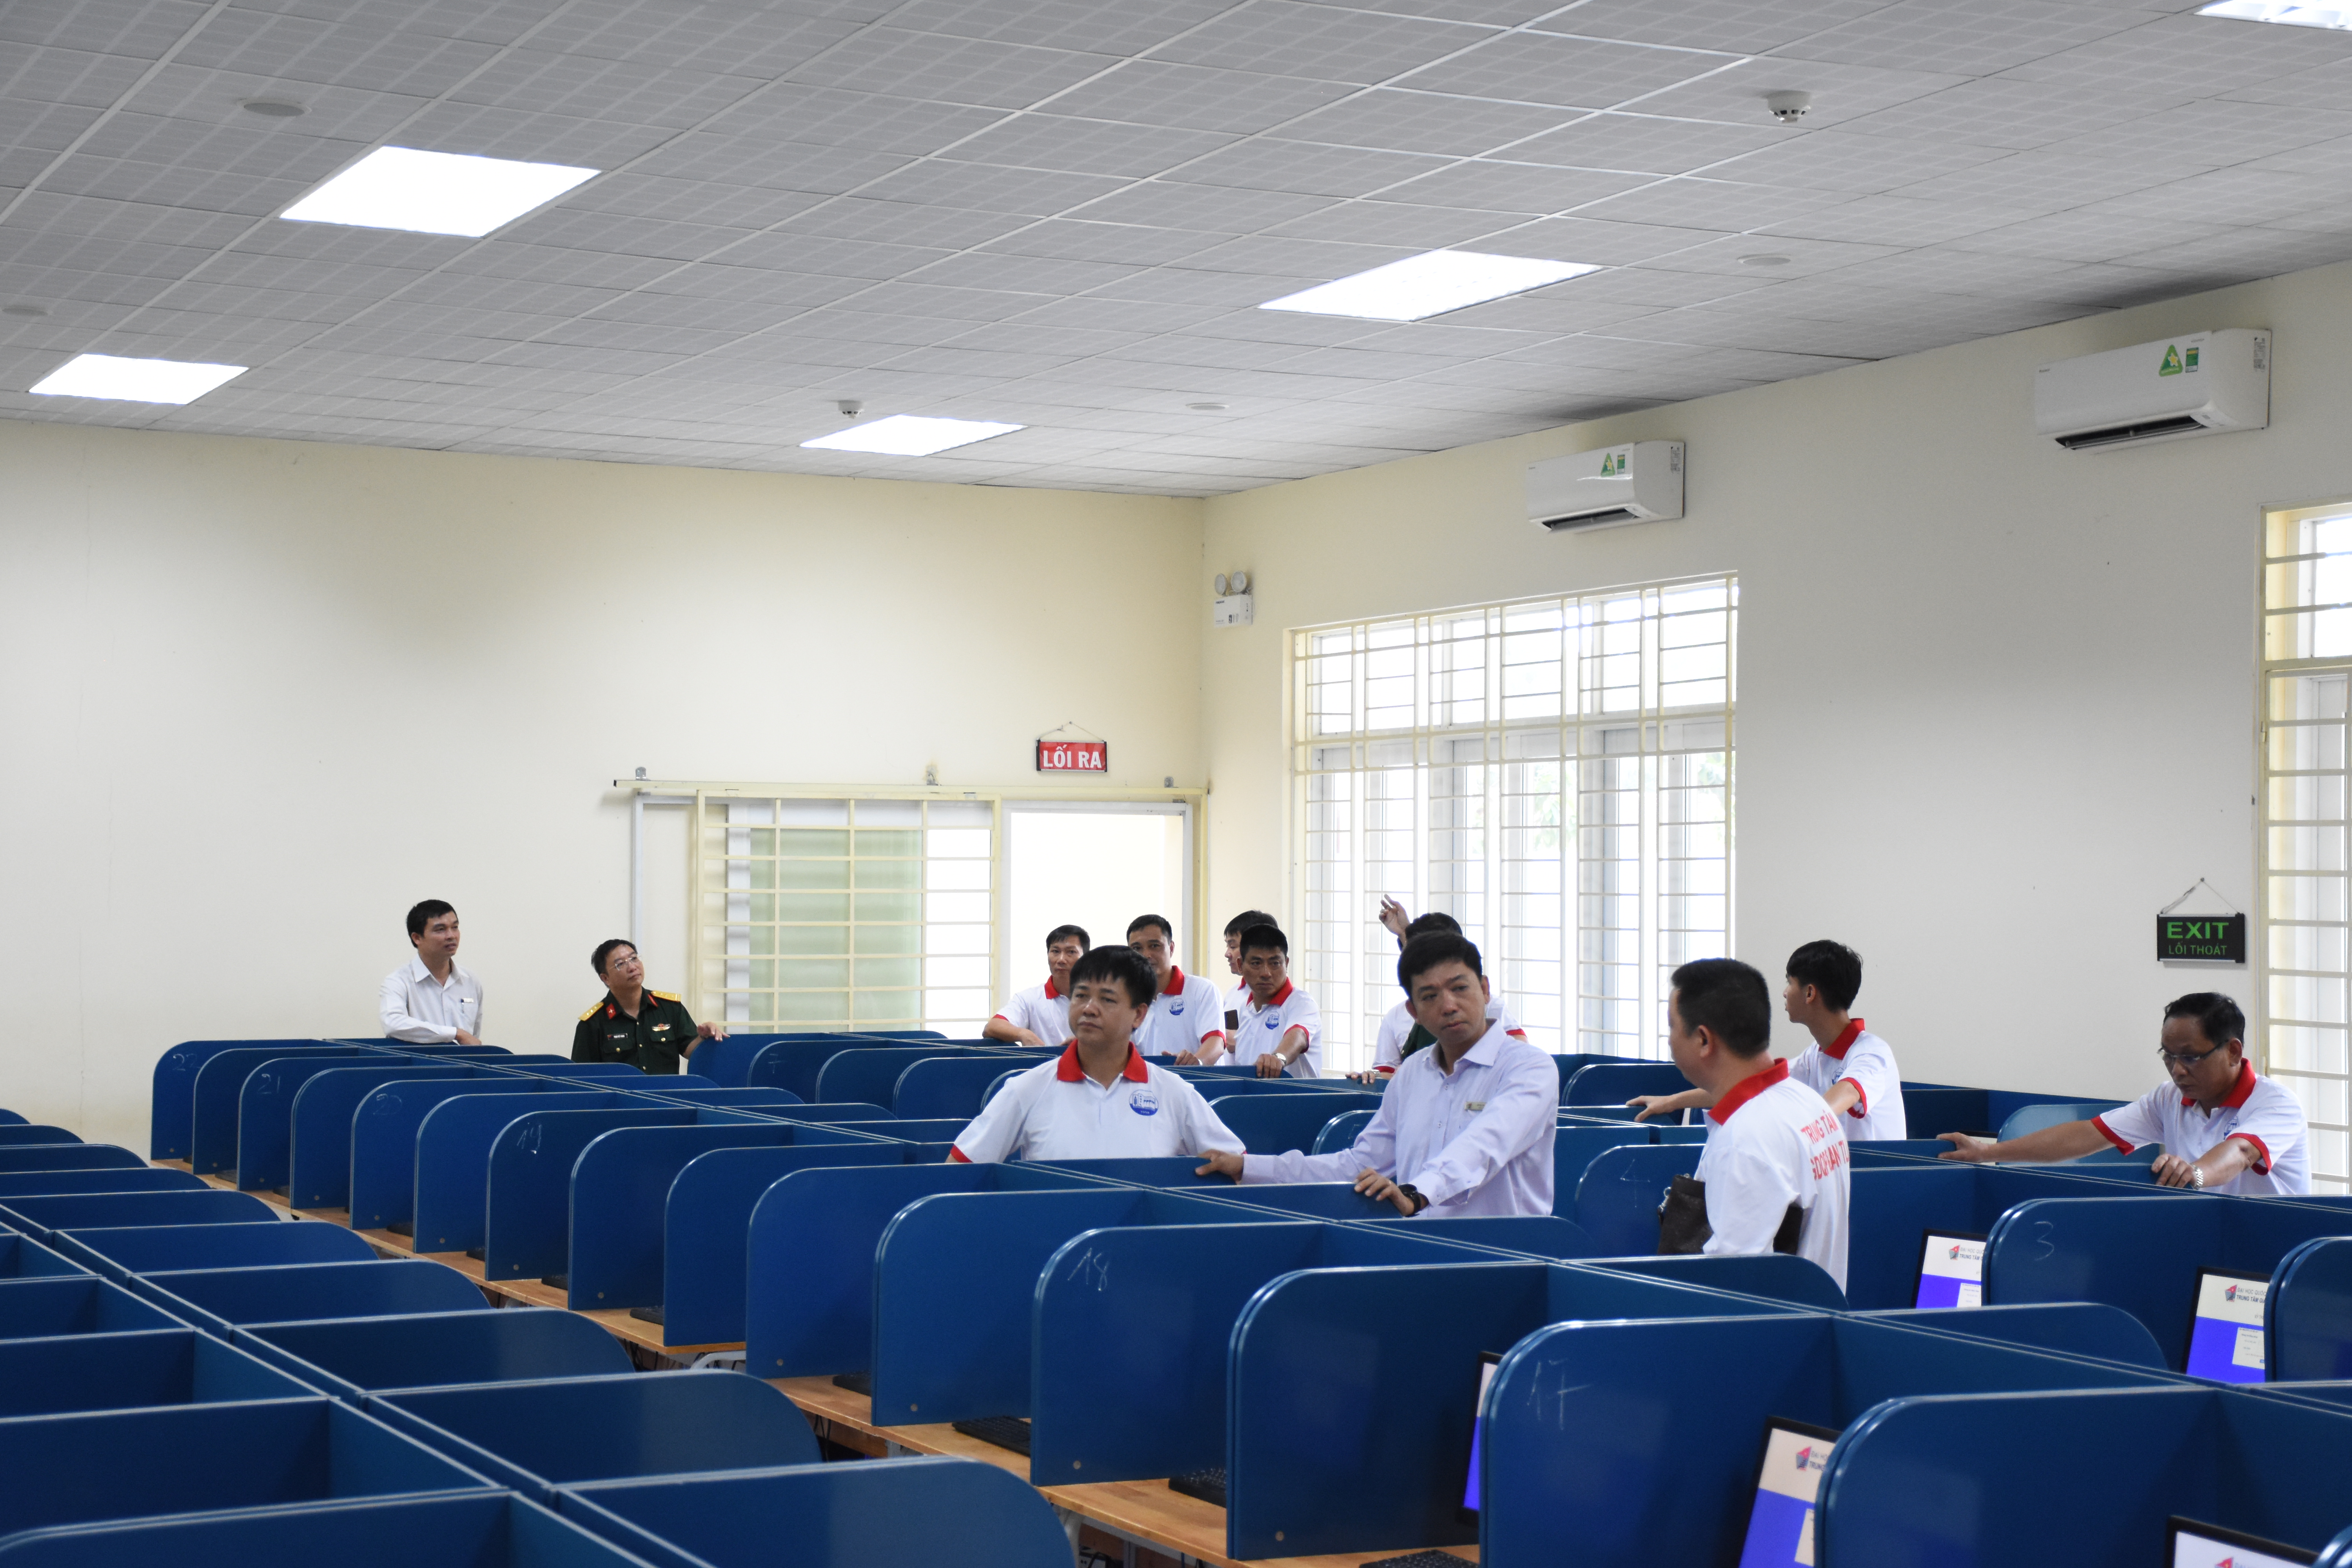 Đoàn công tác Trung tâm Giáo dục Quốc phòng và An ninh Trường Đại học Thuỷ Lợi đến tham quan, học tập thực tế tại Trung tâm Giáo dục Quốc phòng và An ninh Đại học Quốc gia Thành phố Hồ Chí Minh